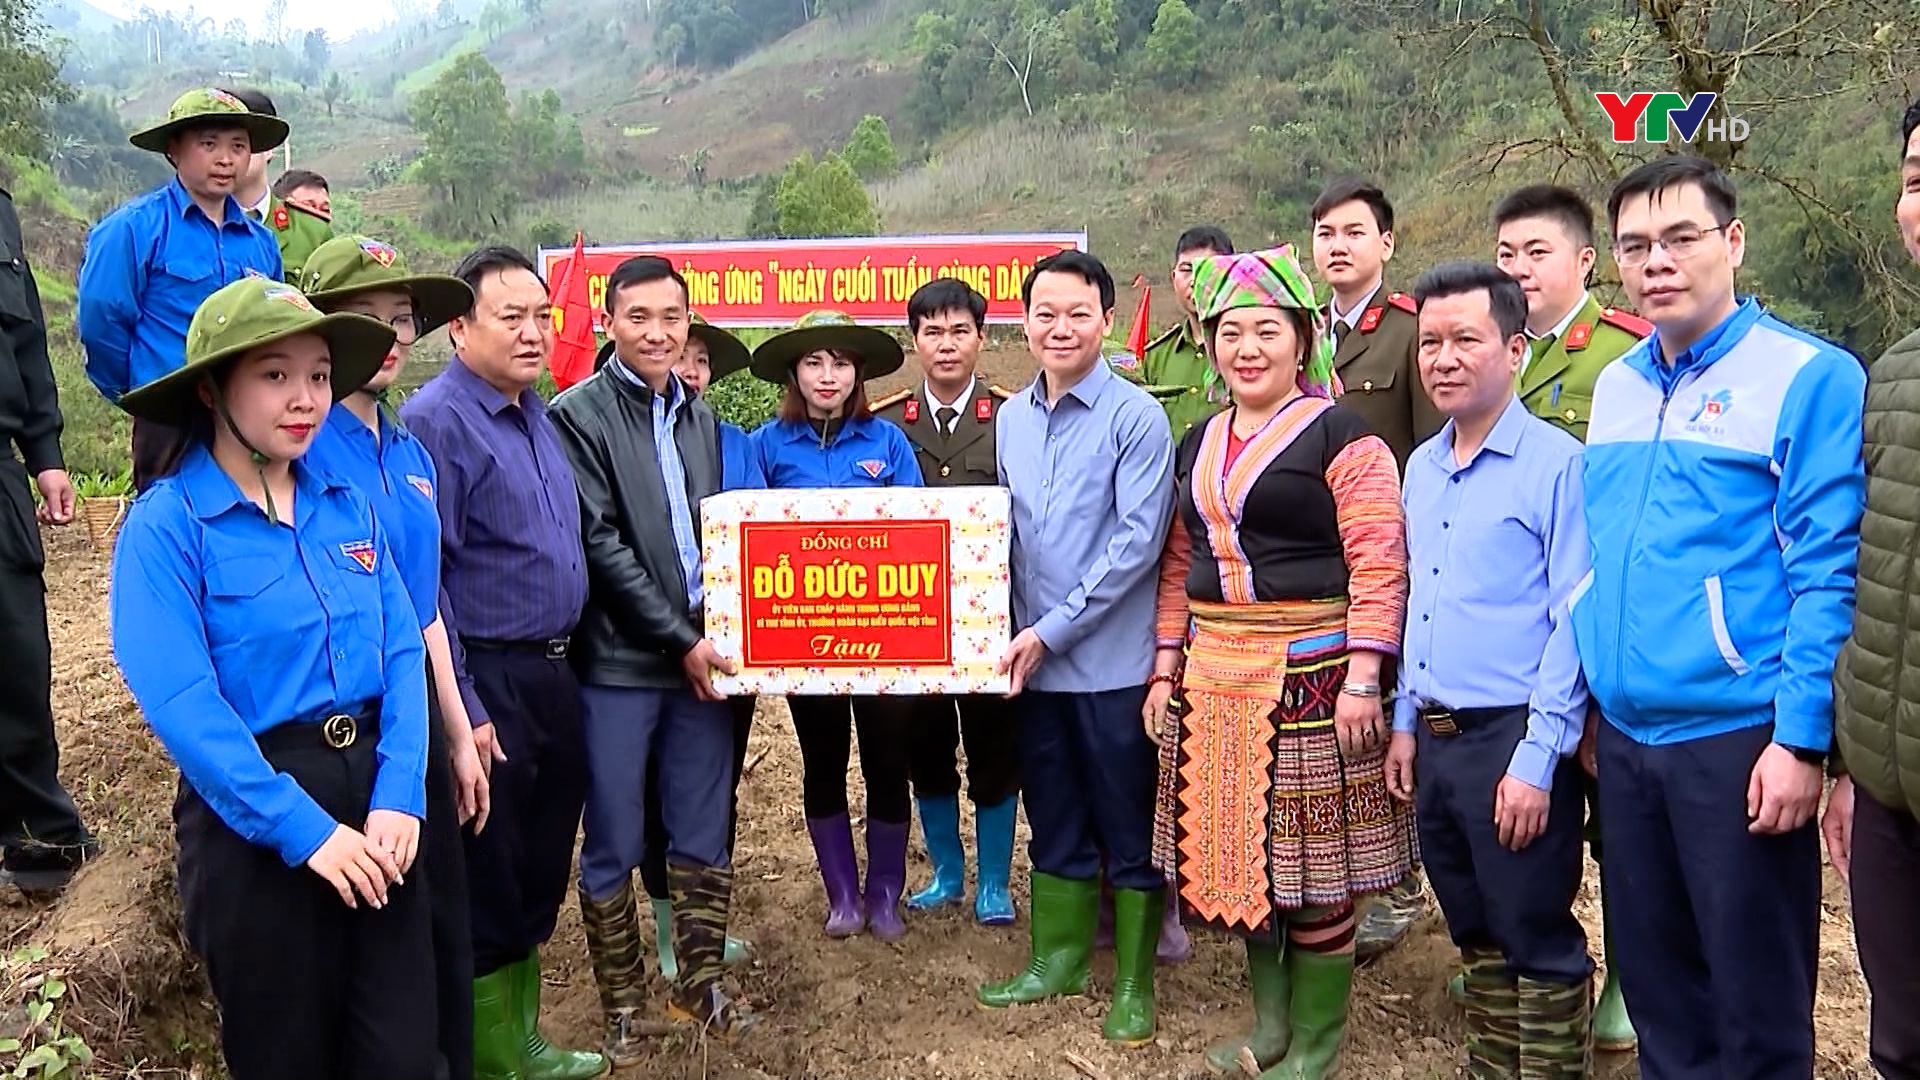 Đồng chí Bí thư Tỉnh ủy Đỗ Đức Duy trồng cây khoai sọ cùng đồng bào Mông xã Bản Mù, huyện Trạm Tấu